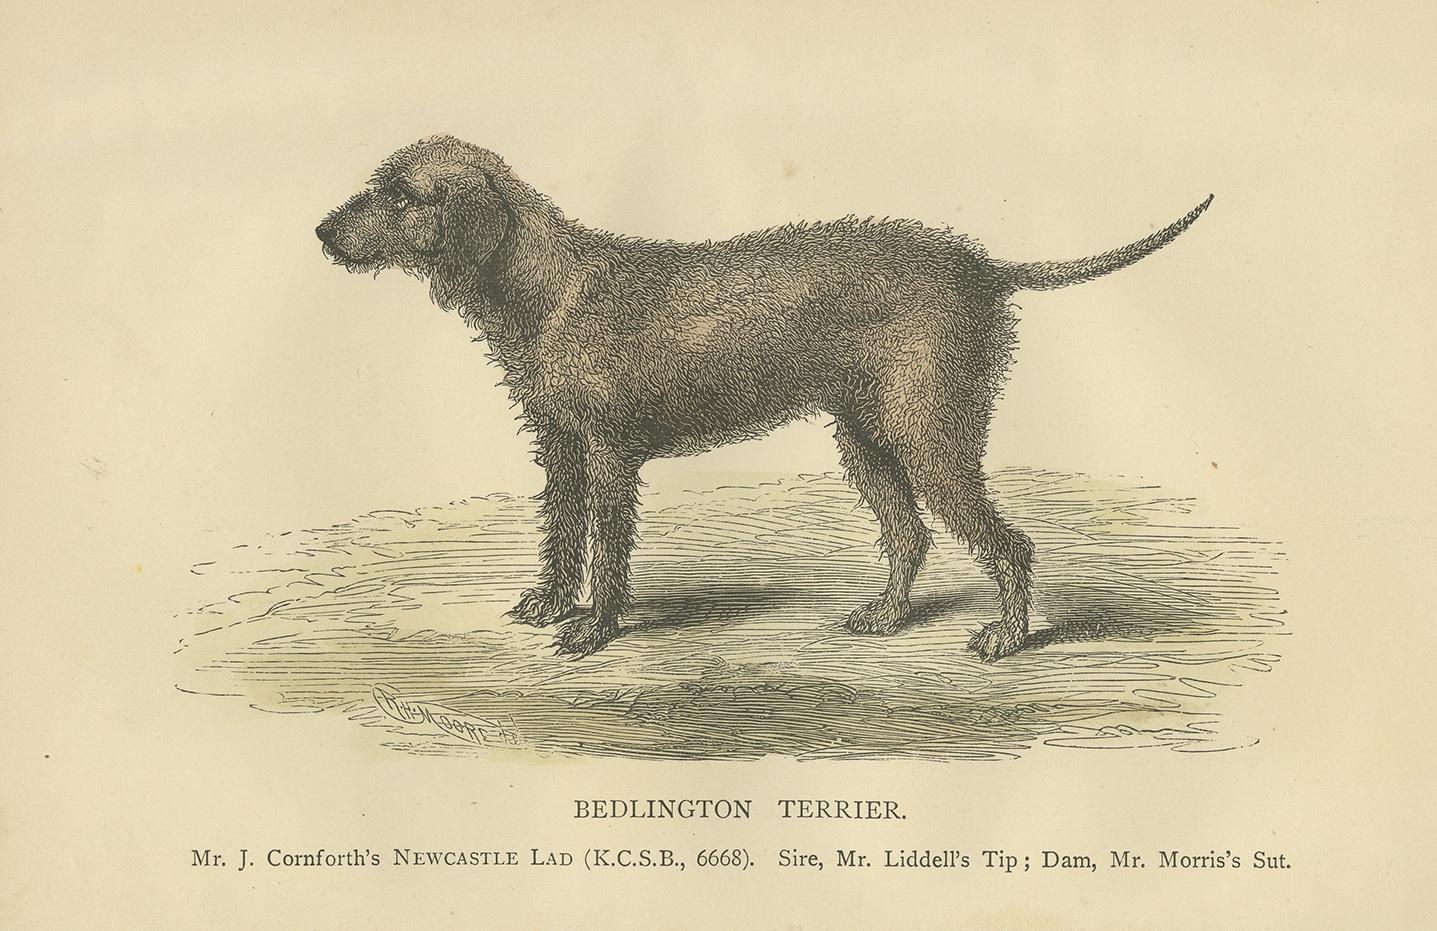 Antique print titled 'Bedlington Terrier'. Dog print of an bedlington terrier. Published circa 1890.